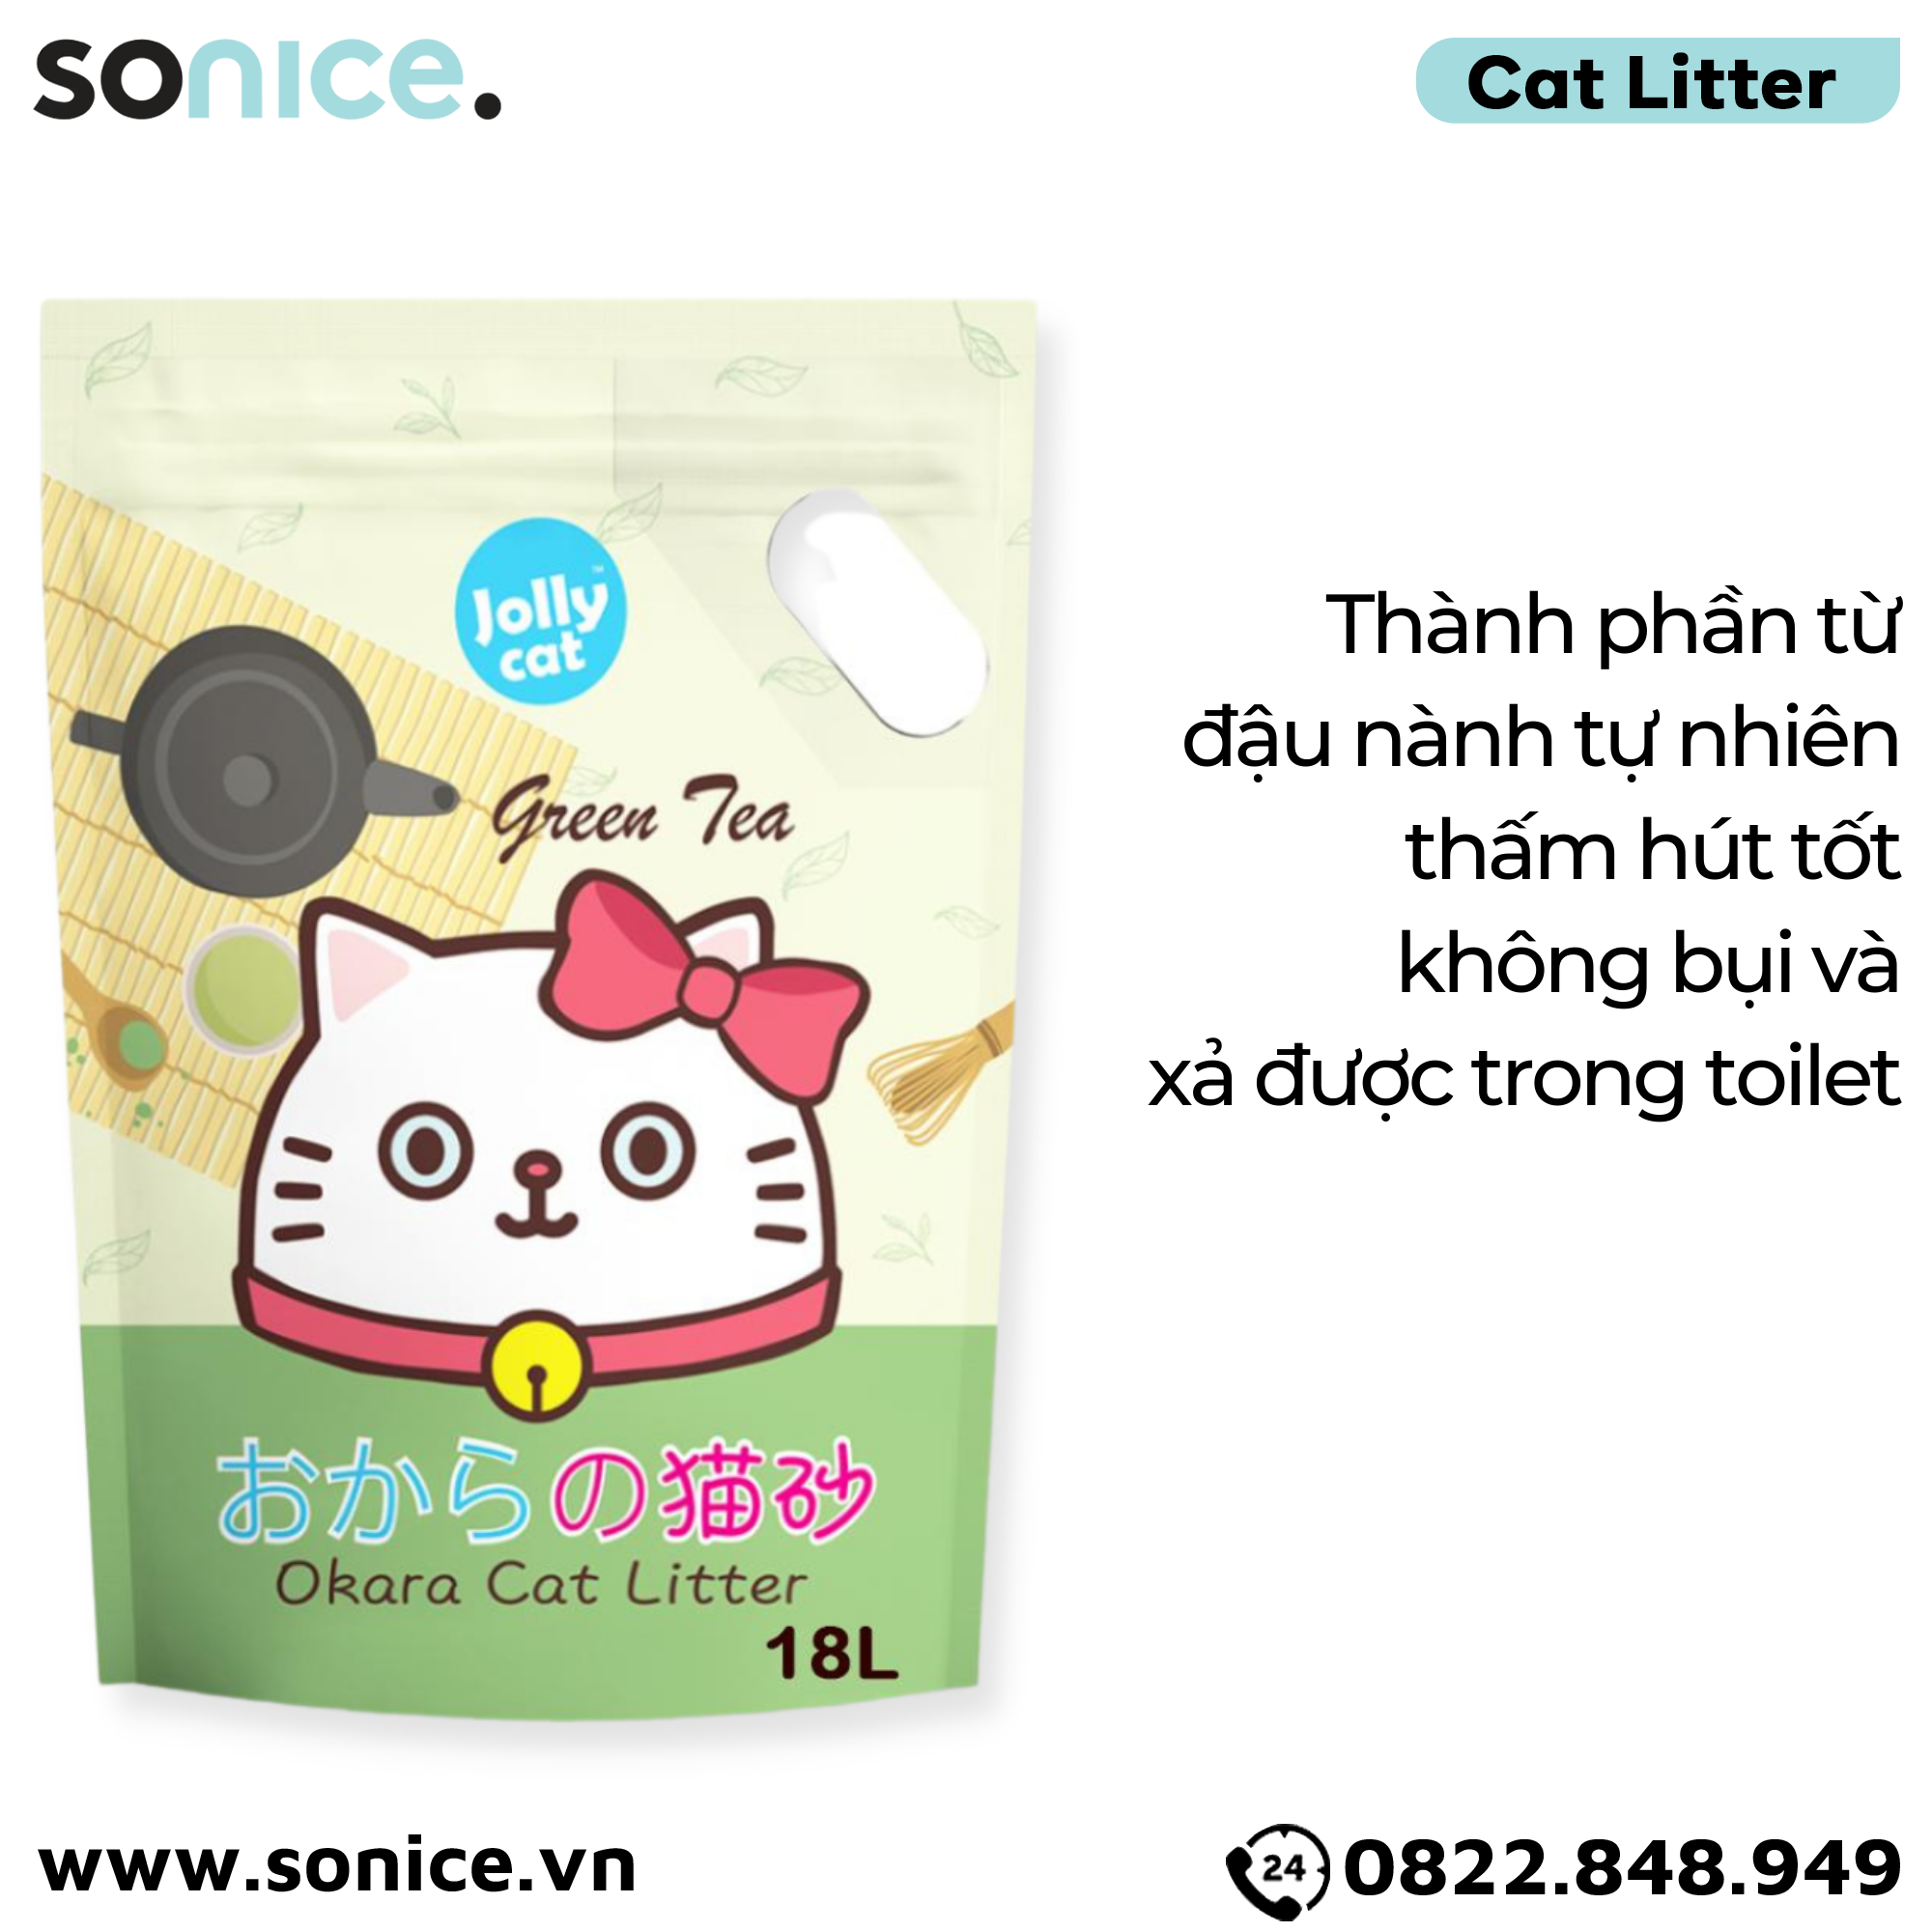  Cát vệ sinh Premium Tofu Jolly Cat Litter Green Tea 18L - Làm từ đậu nành soya hương trà xanh SONICE. 